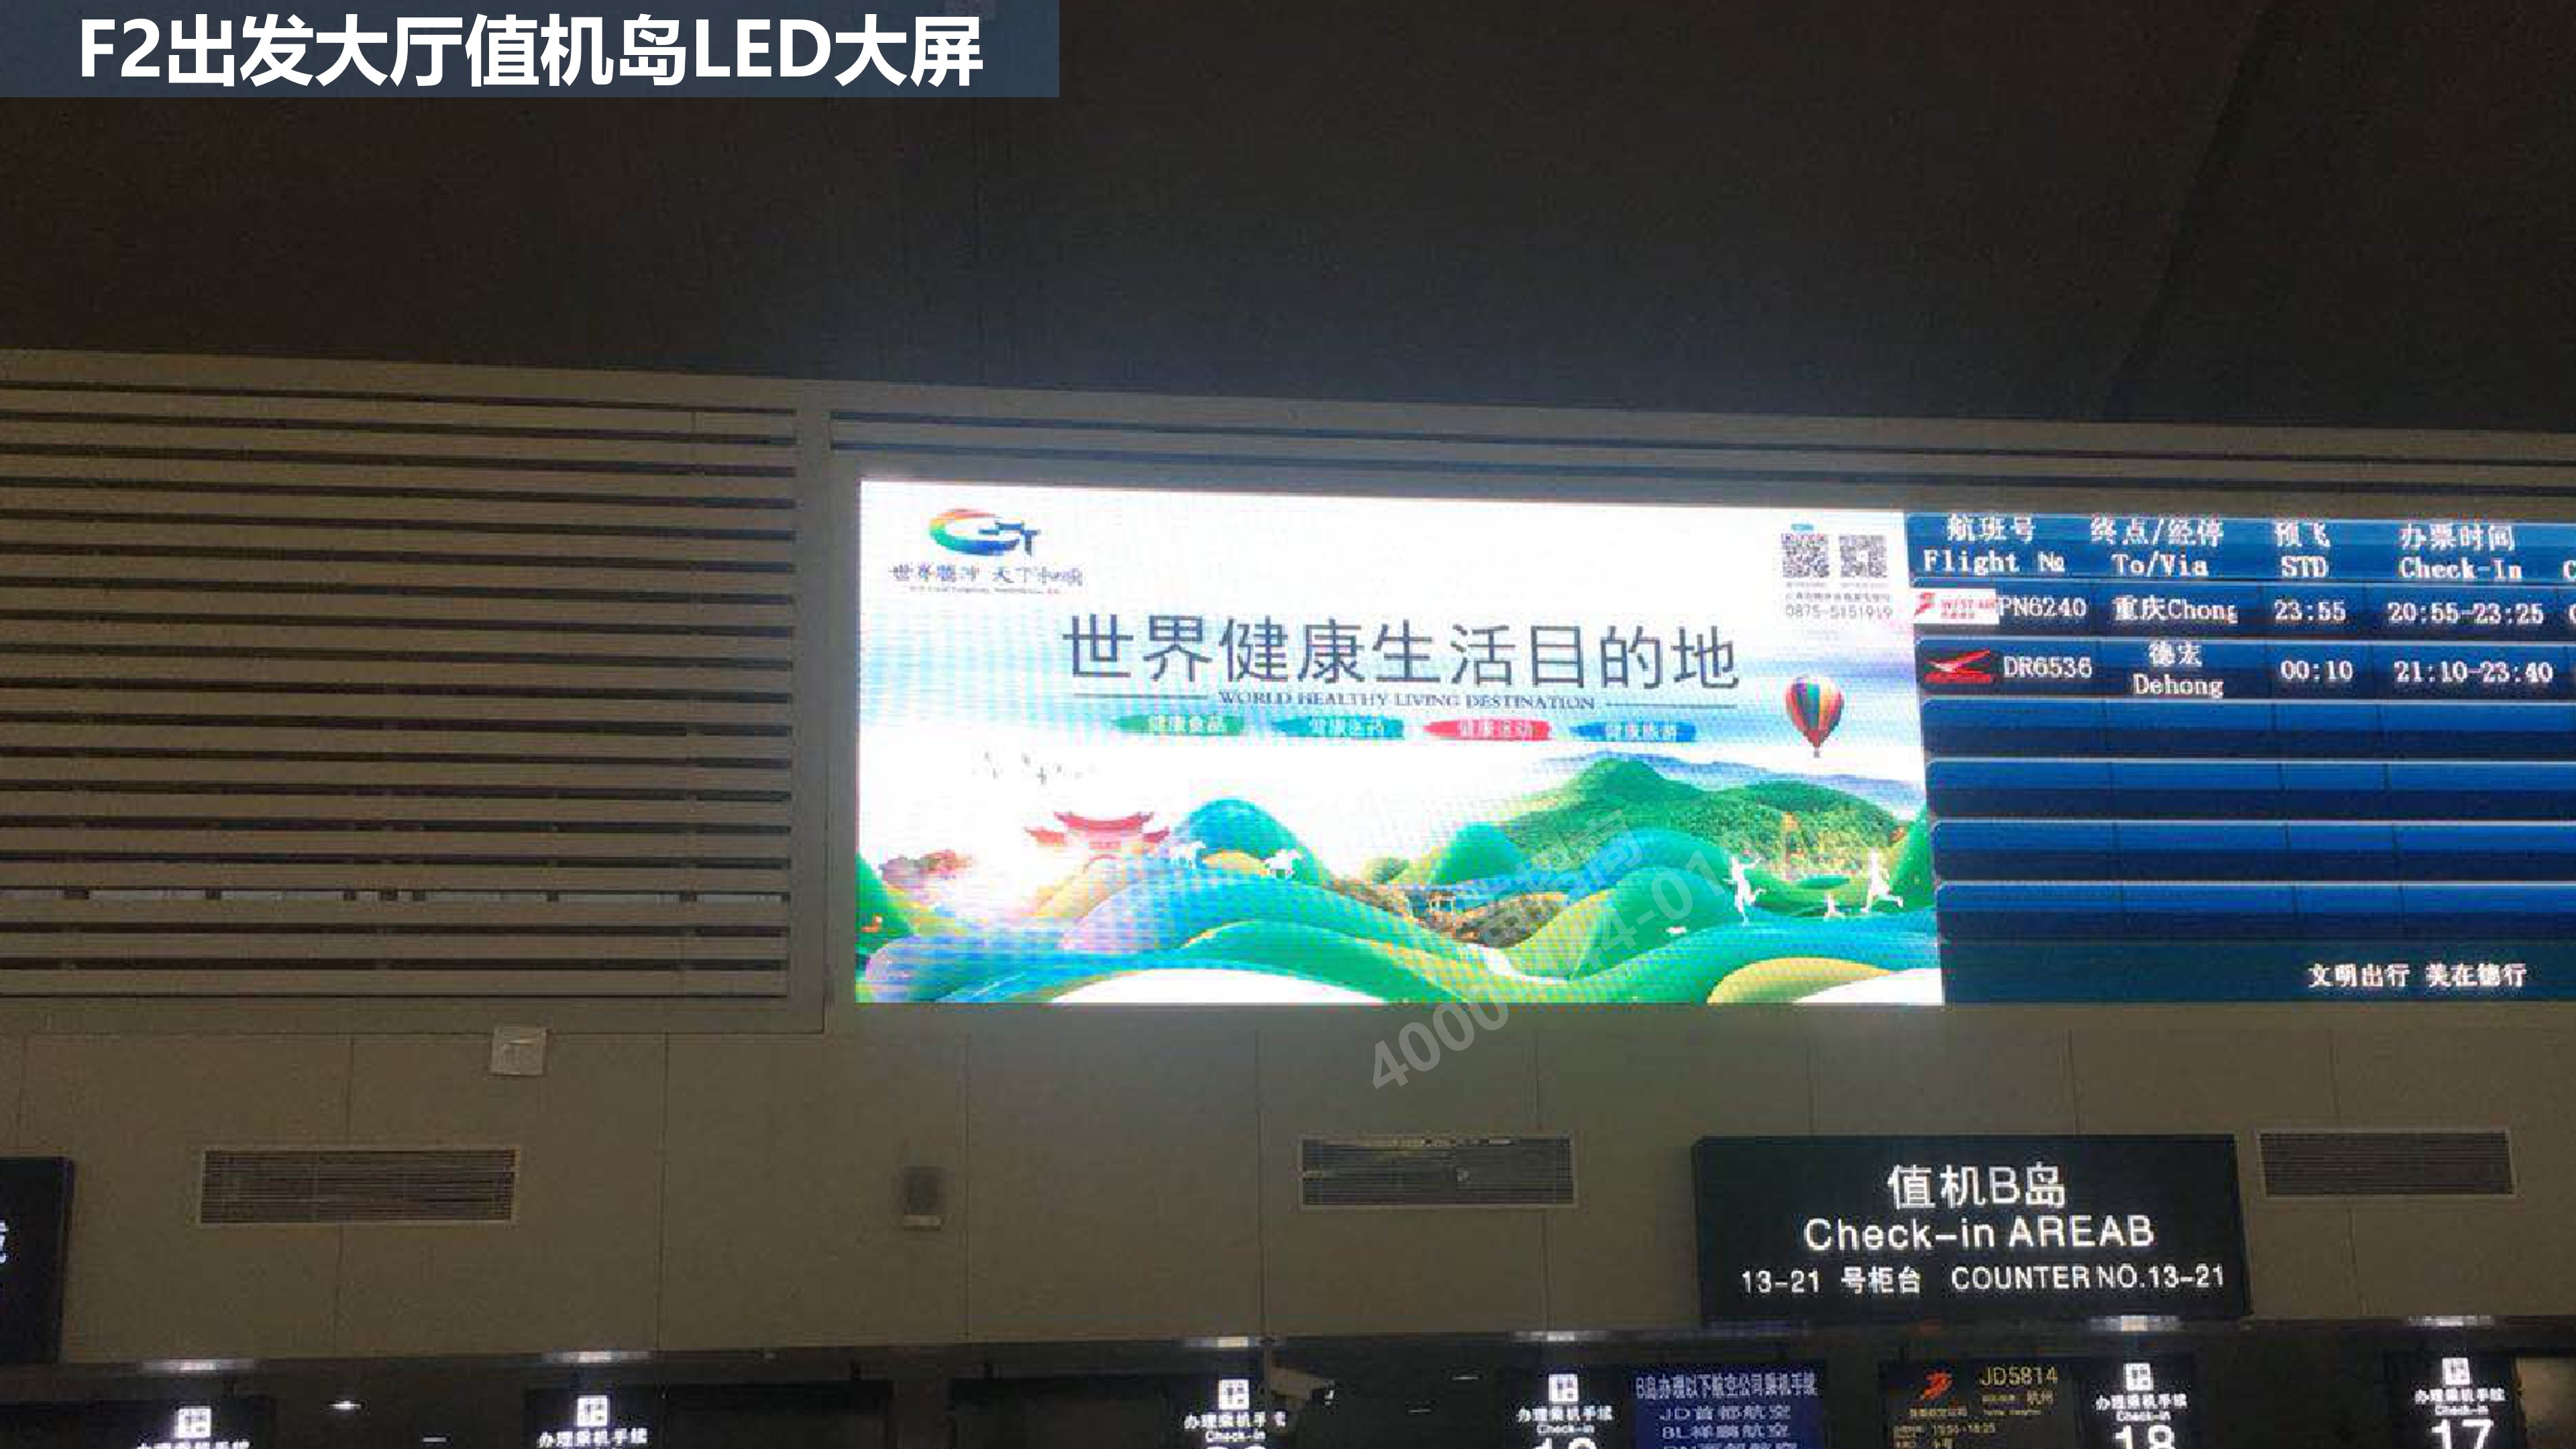 丽江机场出发大厅广告5